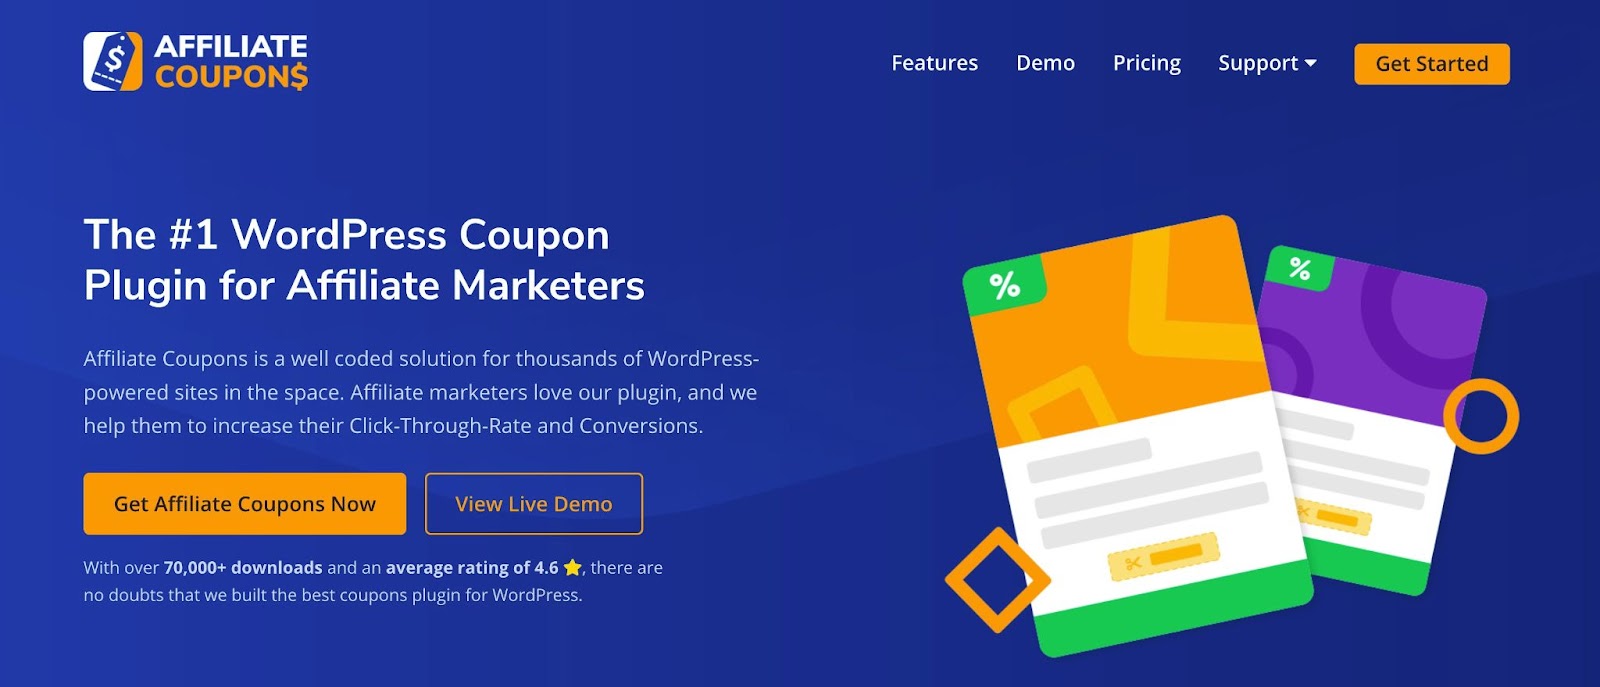 Wordpress coupon plugin, Affiliate Coupons